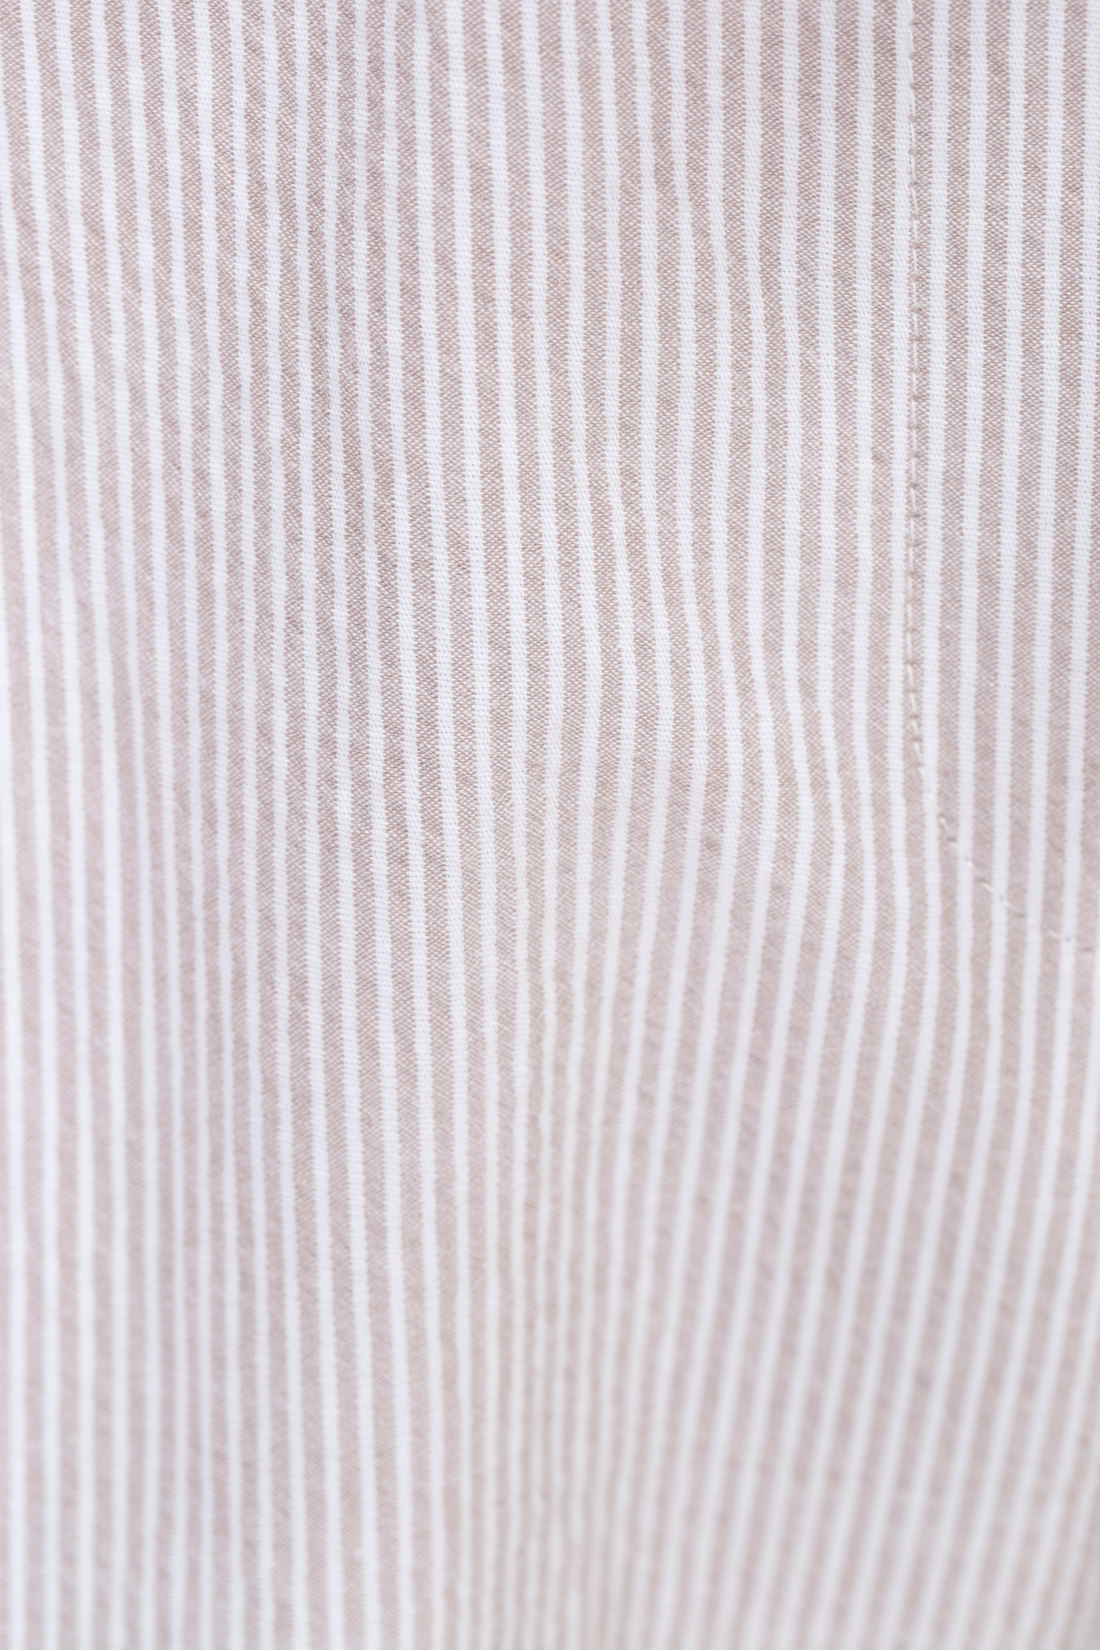 Летние брюки в полоску (арт. baon B297023), размер XS, цвет бежевый Летние брюки в полоску (арт. baon B297023) - фото 4